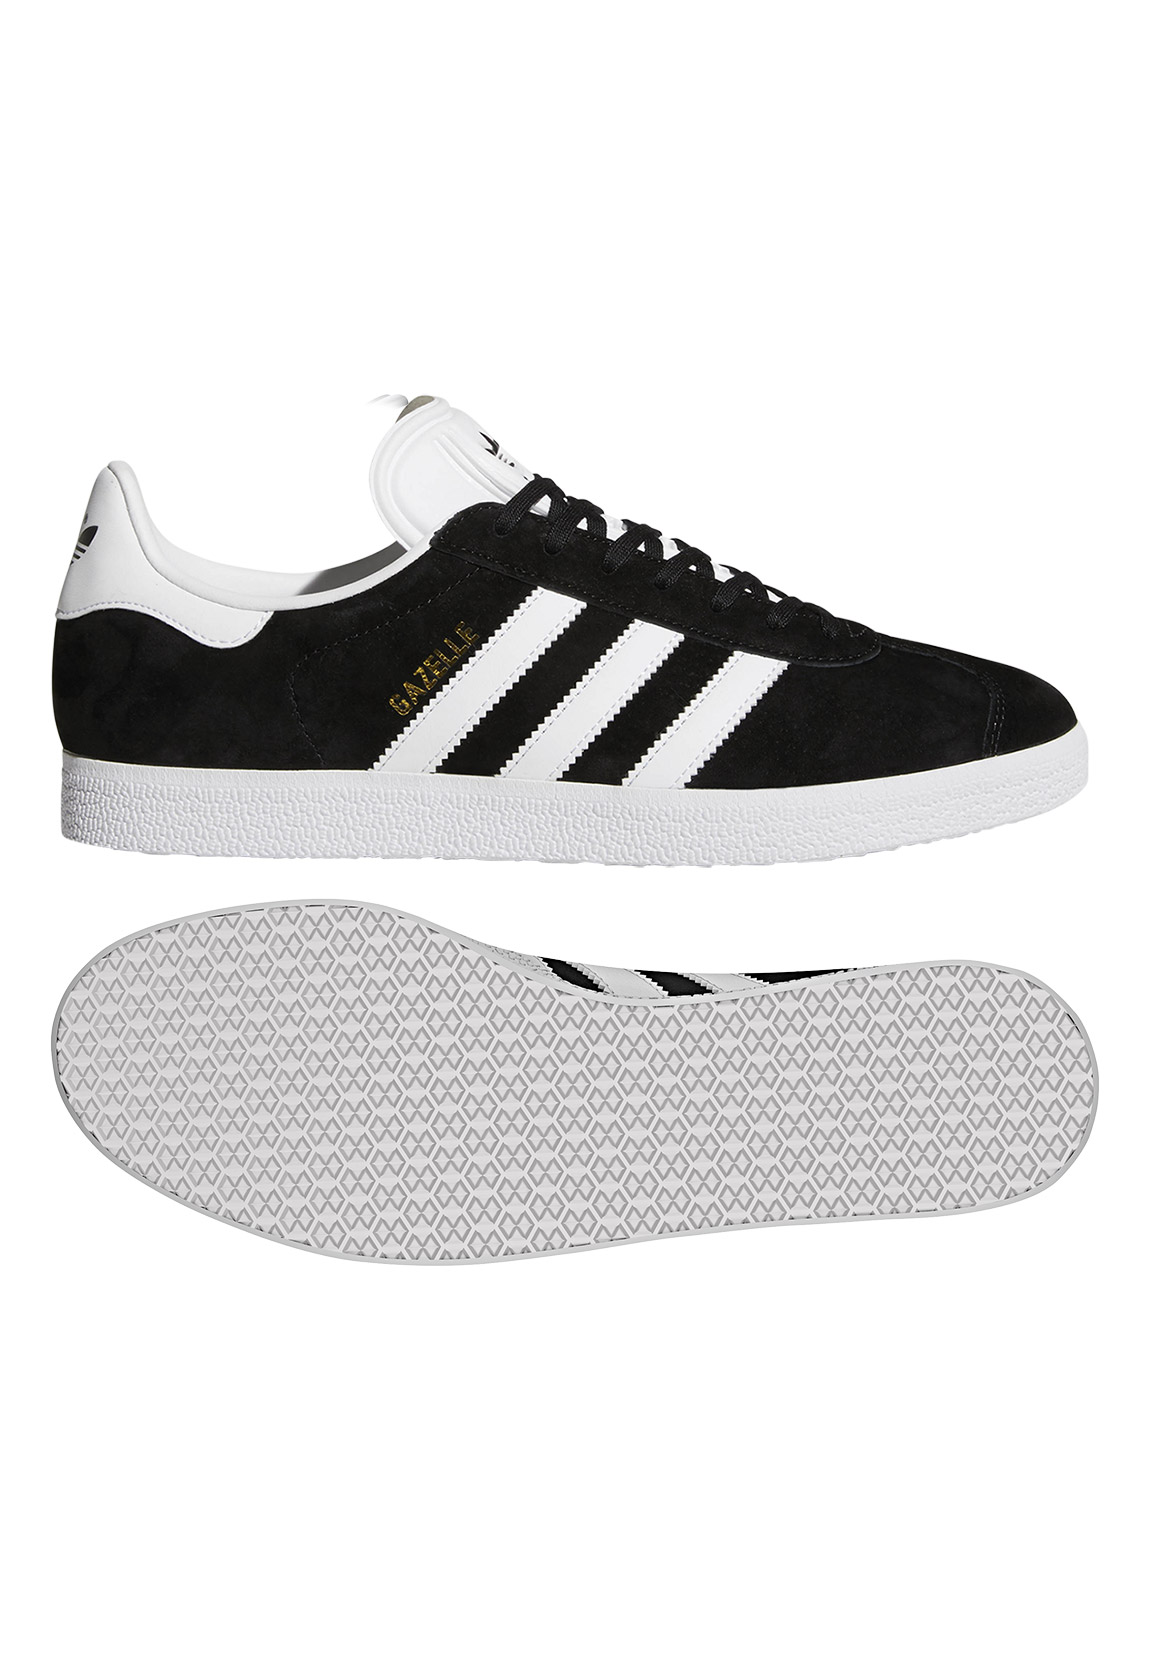 Adidas Originals Gazelle Sportschuhe EU 48 2/3 Core Black / White / Gold Me günstig online kaufen